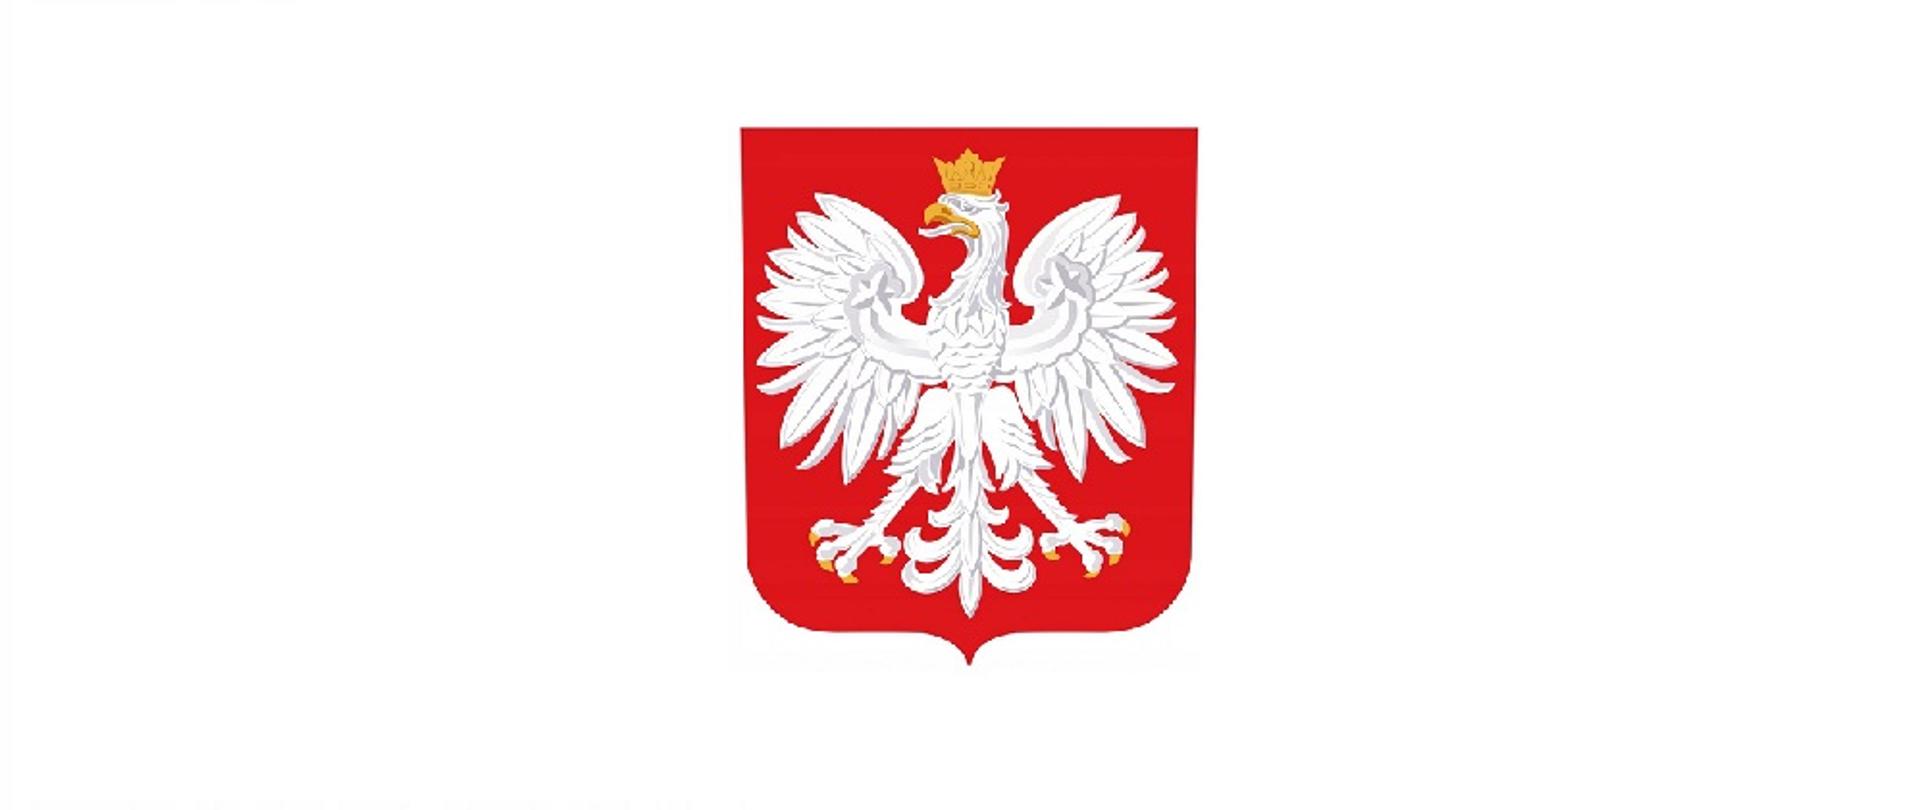 Zdjęcie przedstawia Godło Rzeczypospolitej Polskiej na białym tle